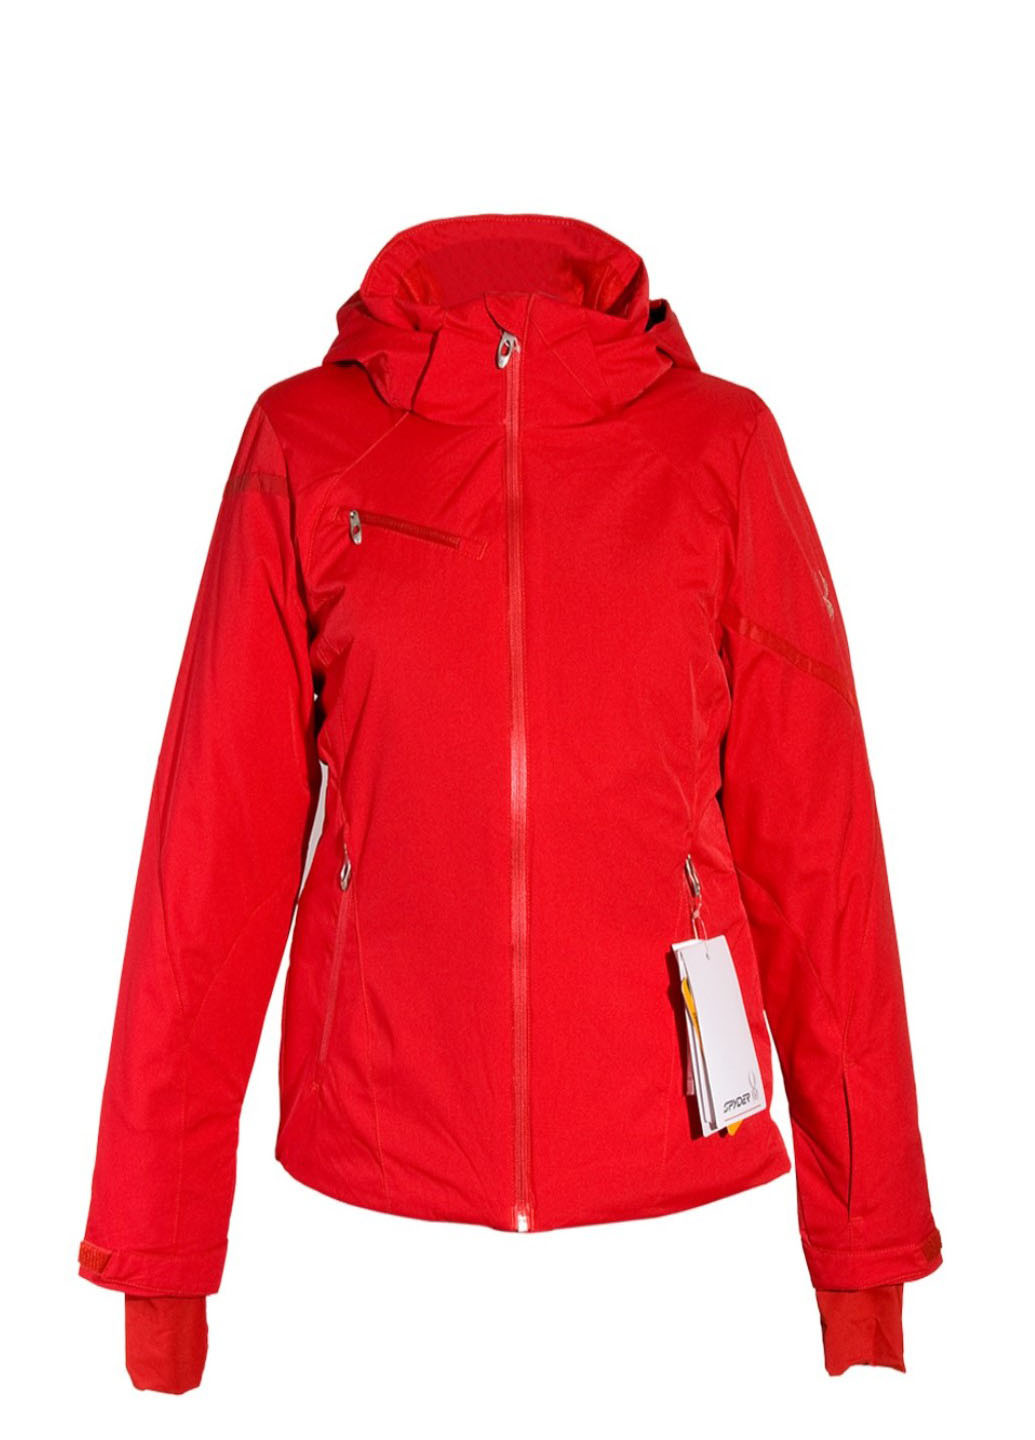 Красная зимняя куртка лыжная Spyder